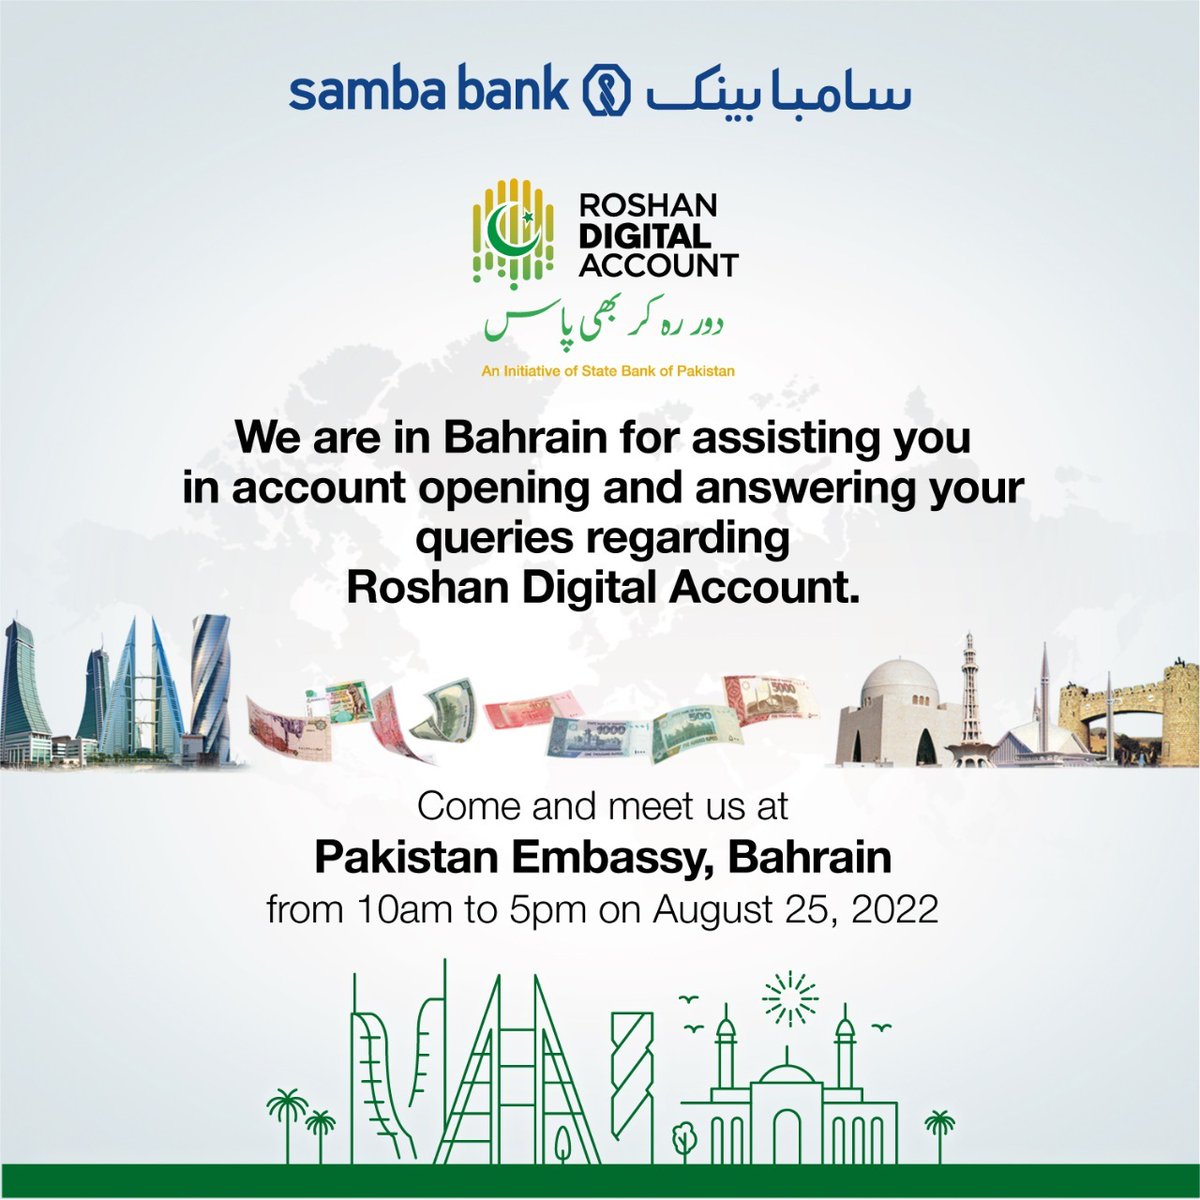 Samba Bank Pakistan (@SambaBankPK) / Twitter